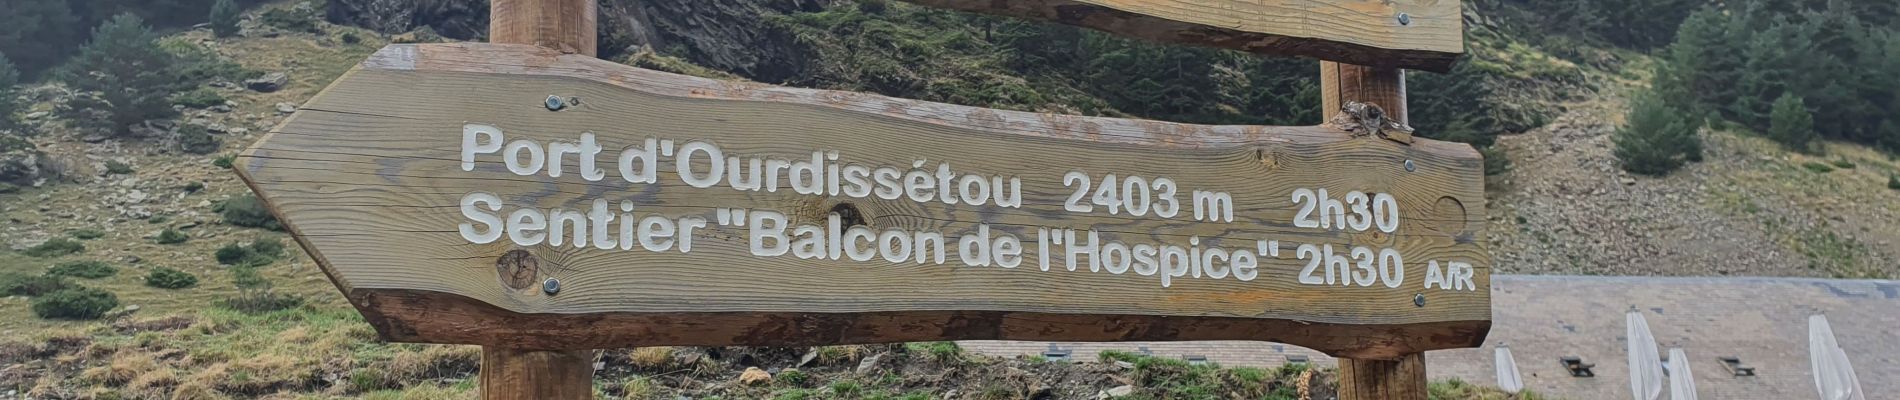 Excursión Senderismo Saint-Lary-Soulan - Col d'ourdissetou boucle eco  - Photo